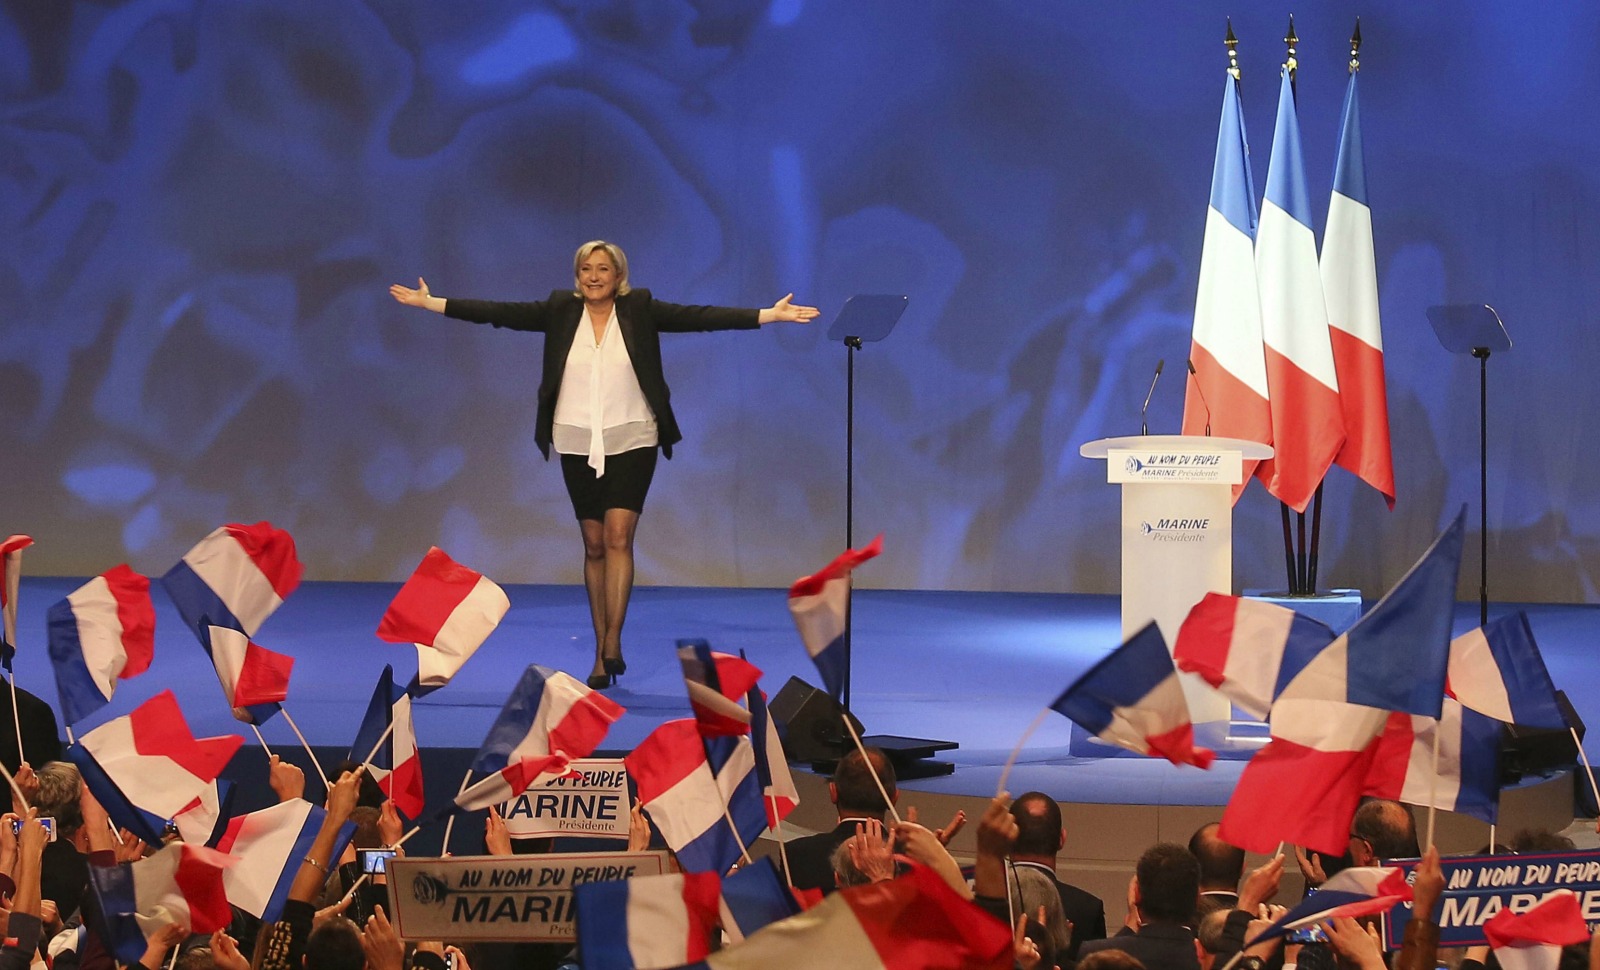 Affaires à répétition: comment donner raison à Marine Le Pen